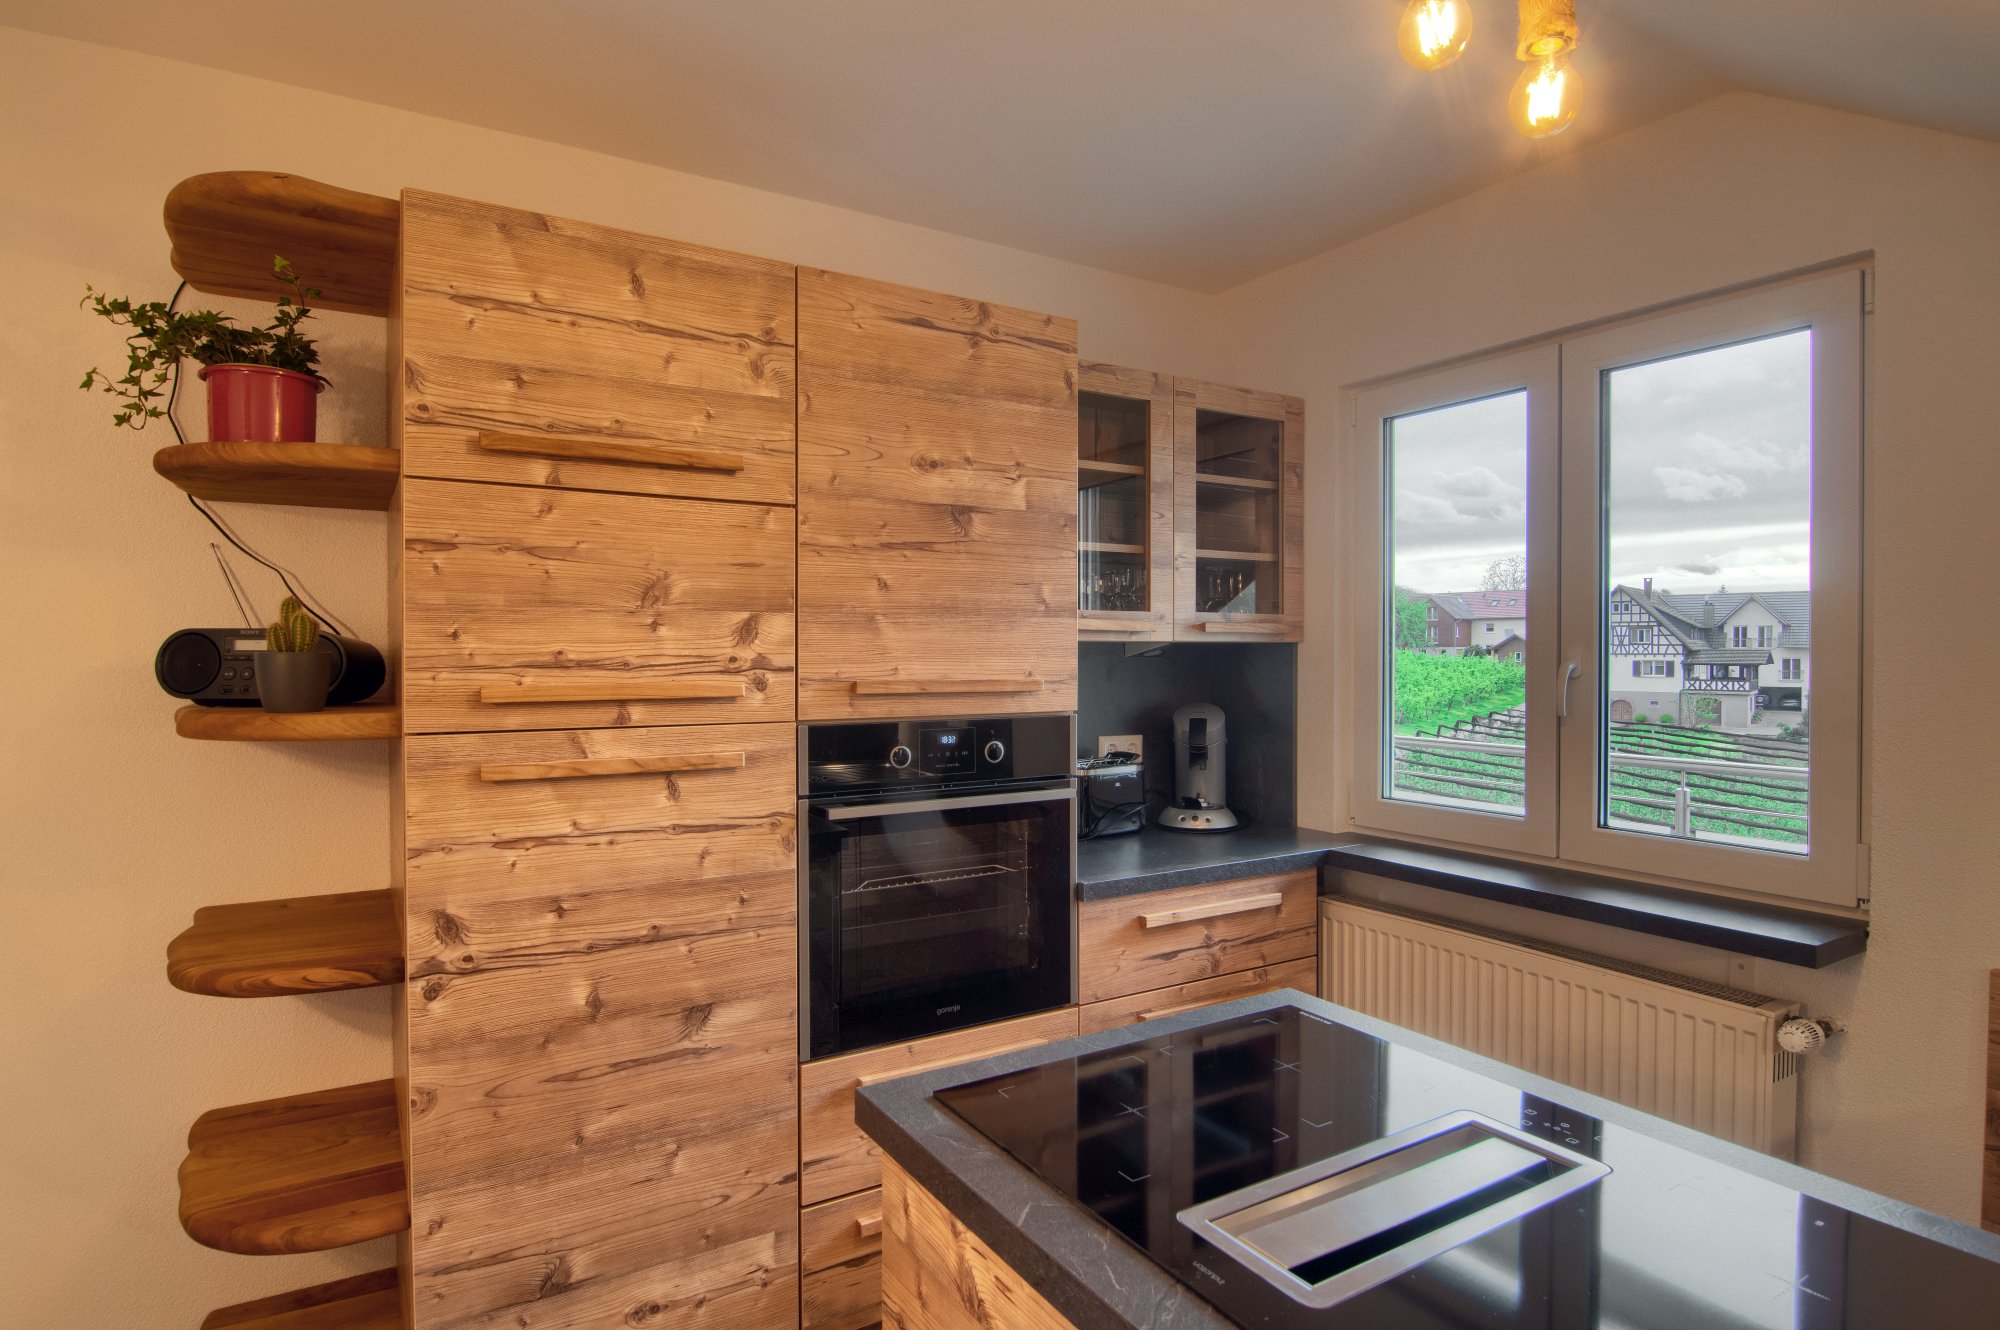 Ferienwohnung Vogesenblick in Durbach Blick in die Küche, rustikales Holz modern umgesetzt